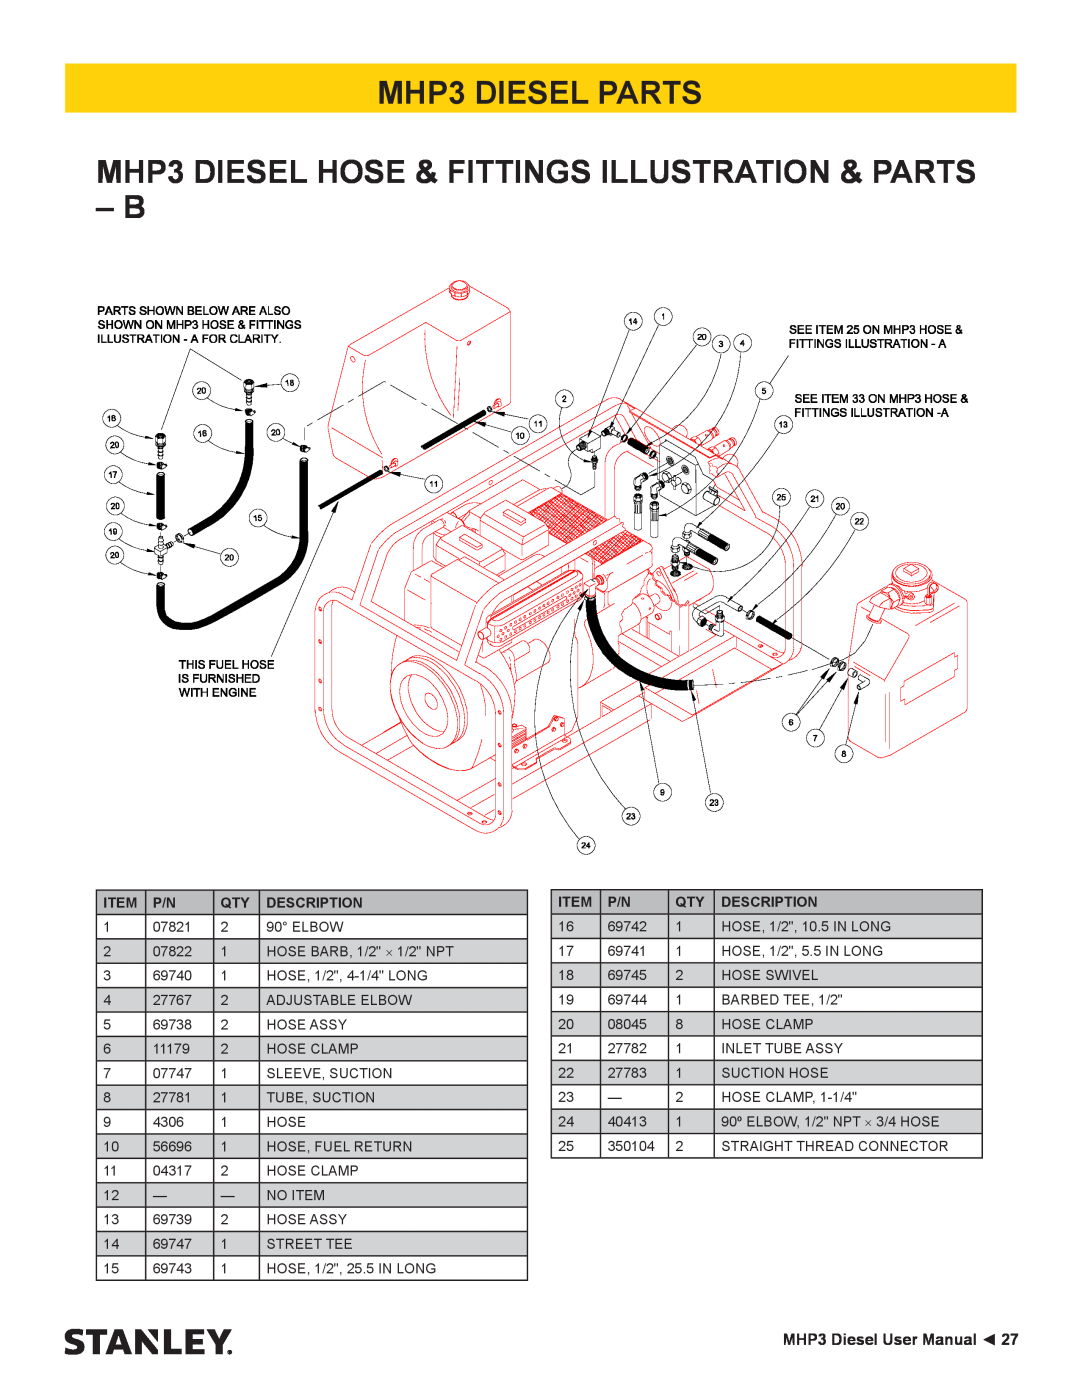 Stanley Black & Decker MHP3 DIESEL PARTS MHP3 DIESEL HOSE & FITTINGS ILLUSTRATION & PARTS B, MHP3 Diesel User Manual 